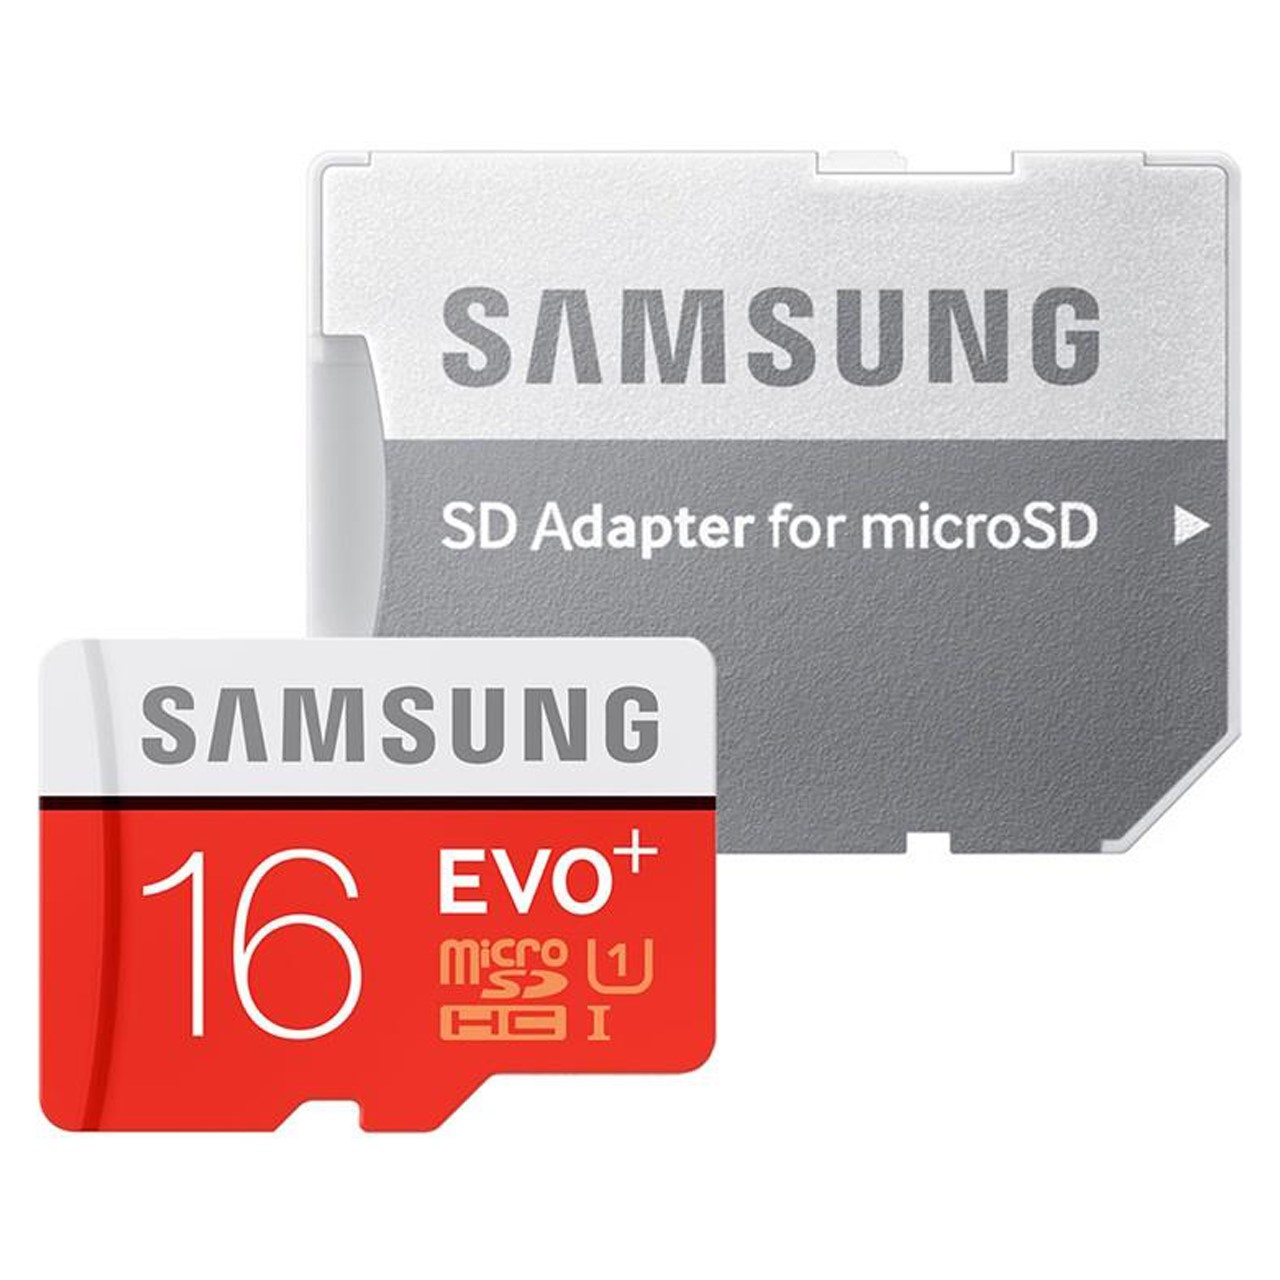 کارت حافظه microSDHC مدل Evo Plus کلاس 10 استاندارد UHS-I U1 سرعت 80MBps ظرفیت 16 گیگابایت به همراه آداپتور SD